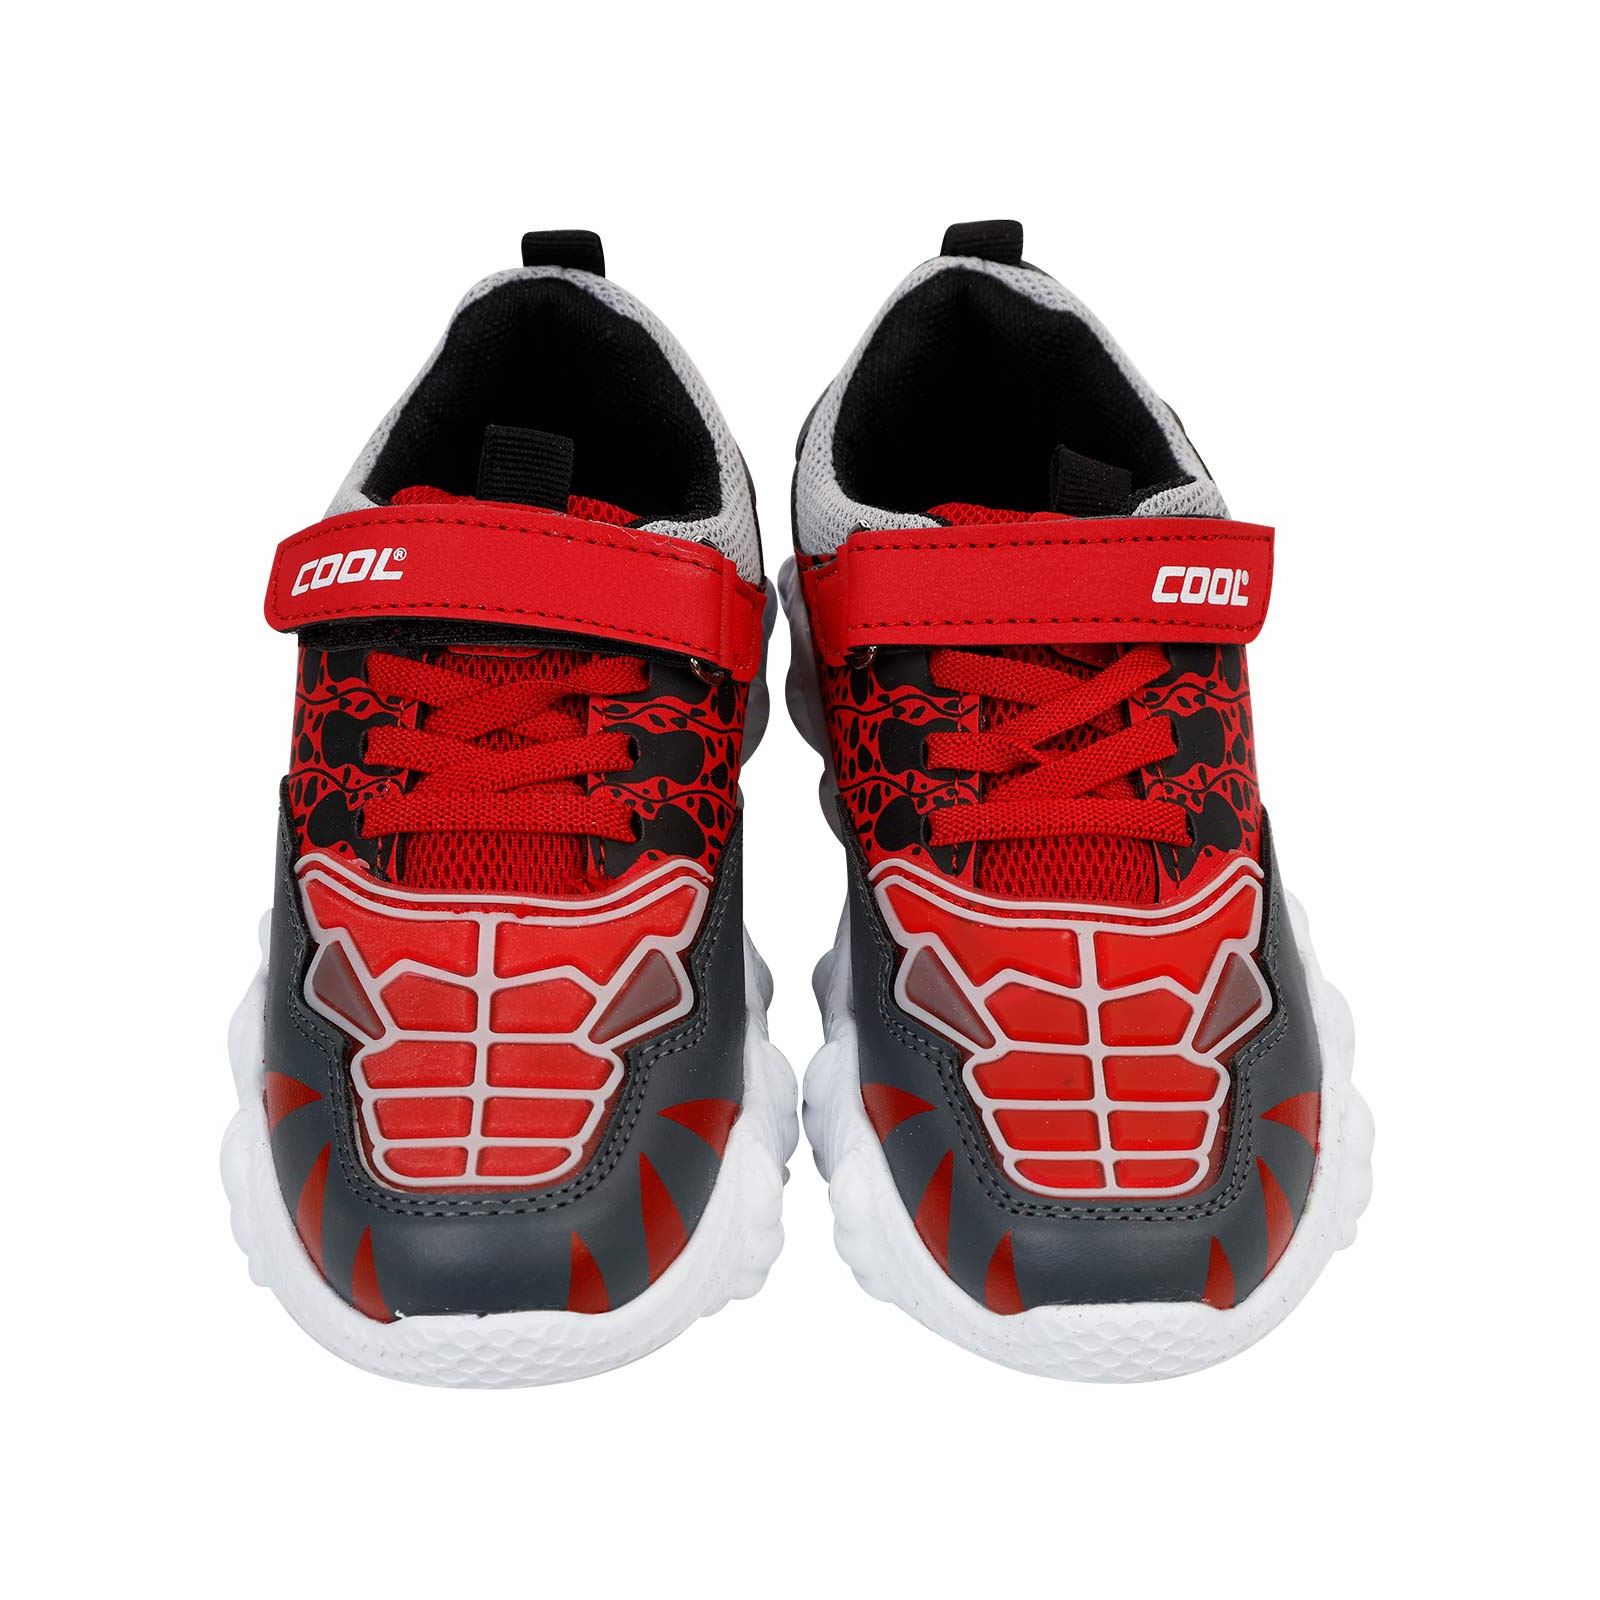 Civil Sport Erkek Çocuk Spor Ayakkabı 31-35 Numara Kırmızı